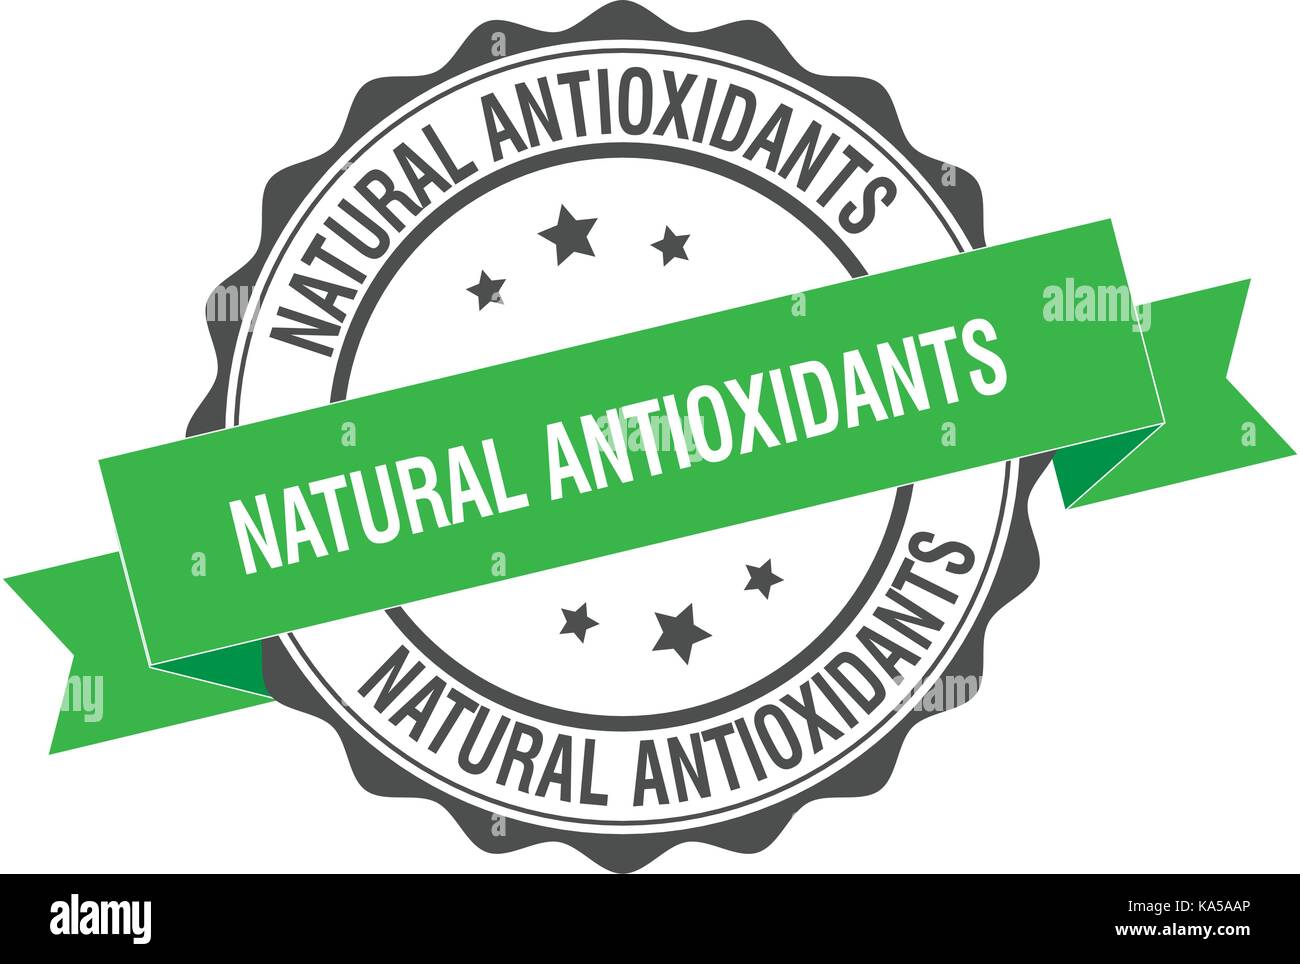 Los antioxidantes naturales ilustración del sello Ilustración del Vector